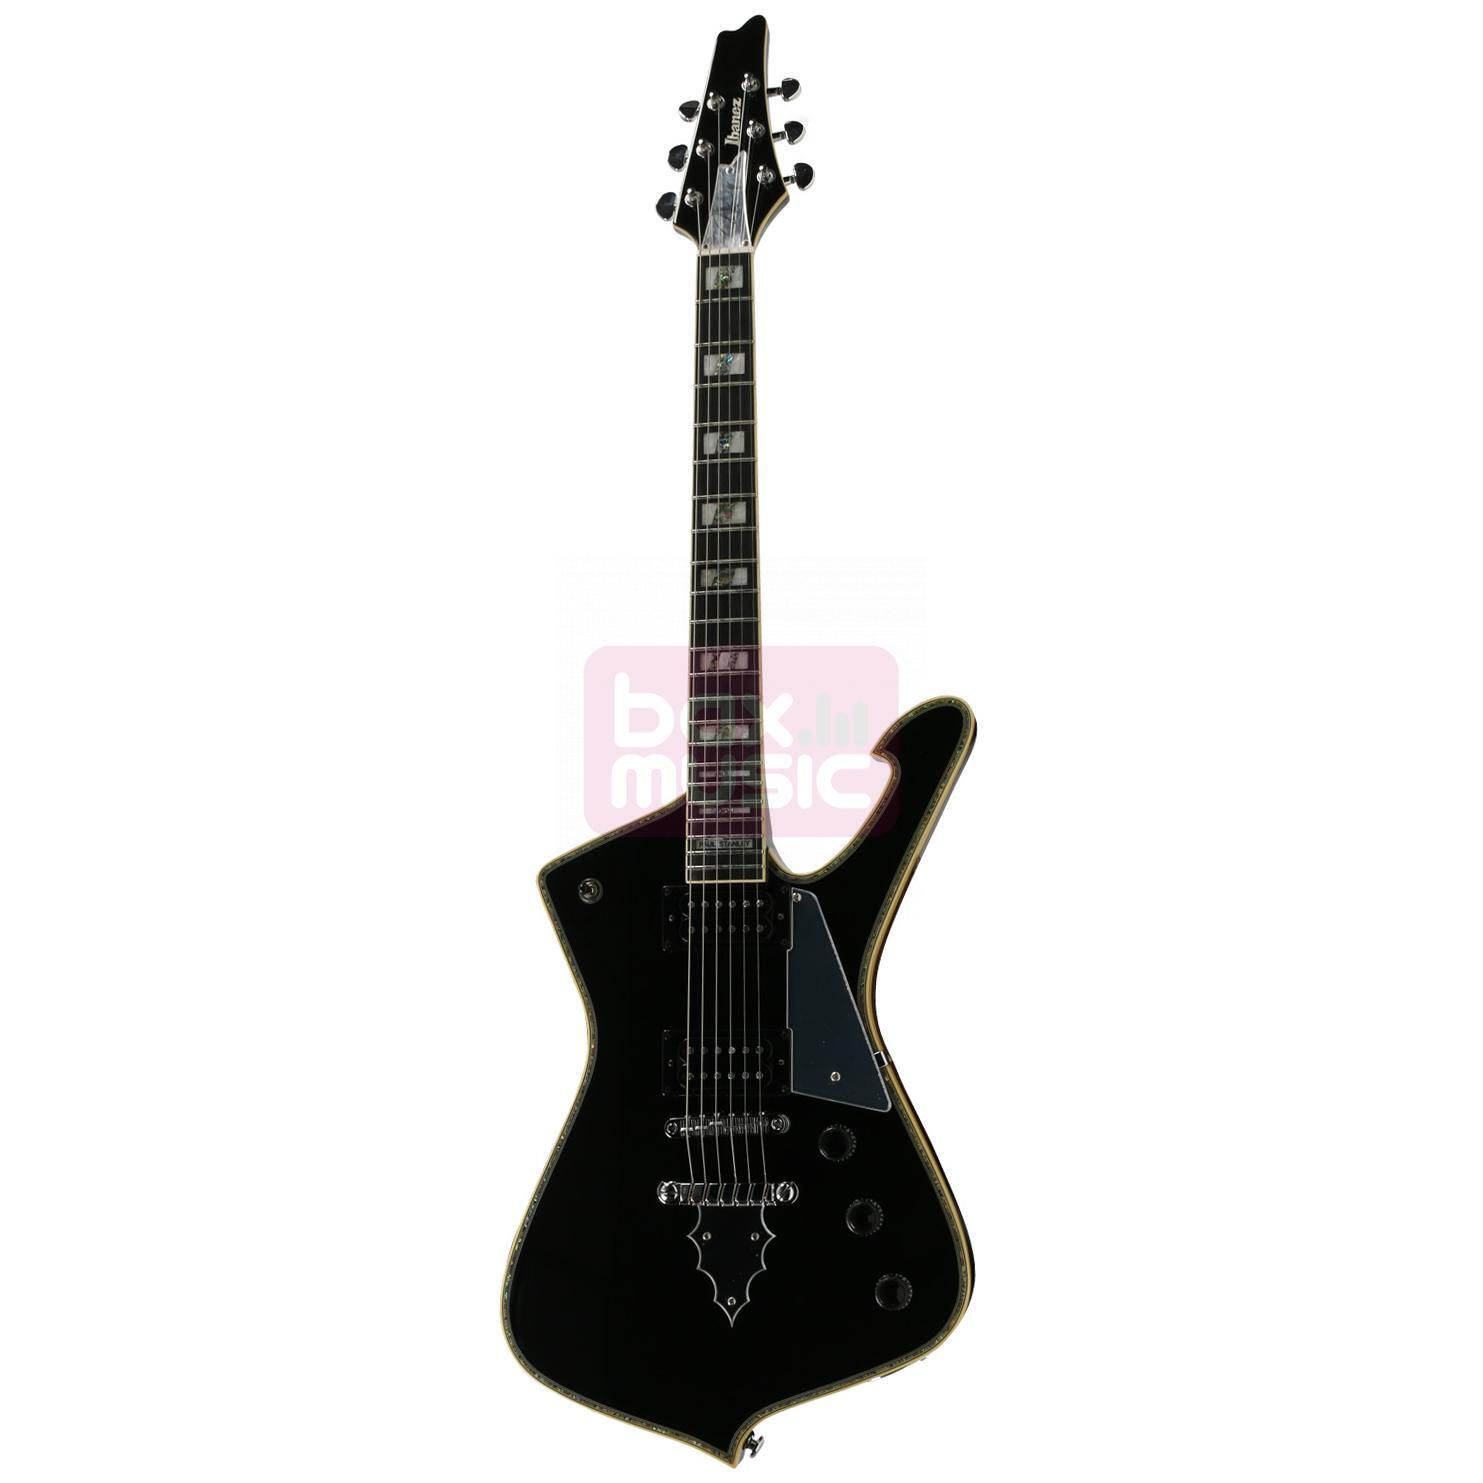 Ibanez PS120 Paul Stanley Signature elektrische gitaar zwart